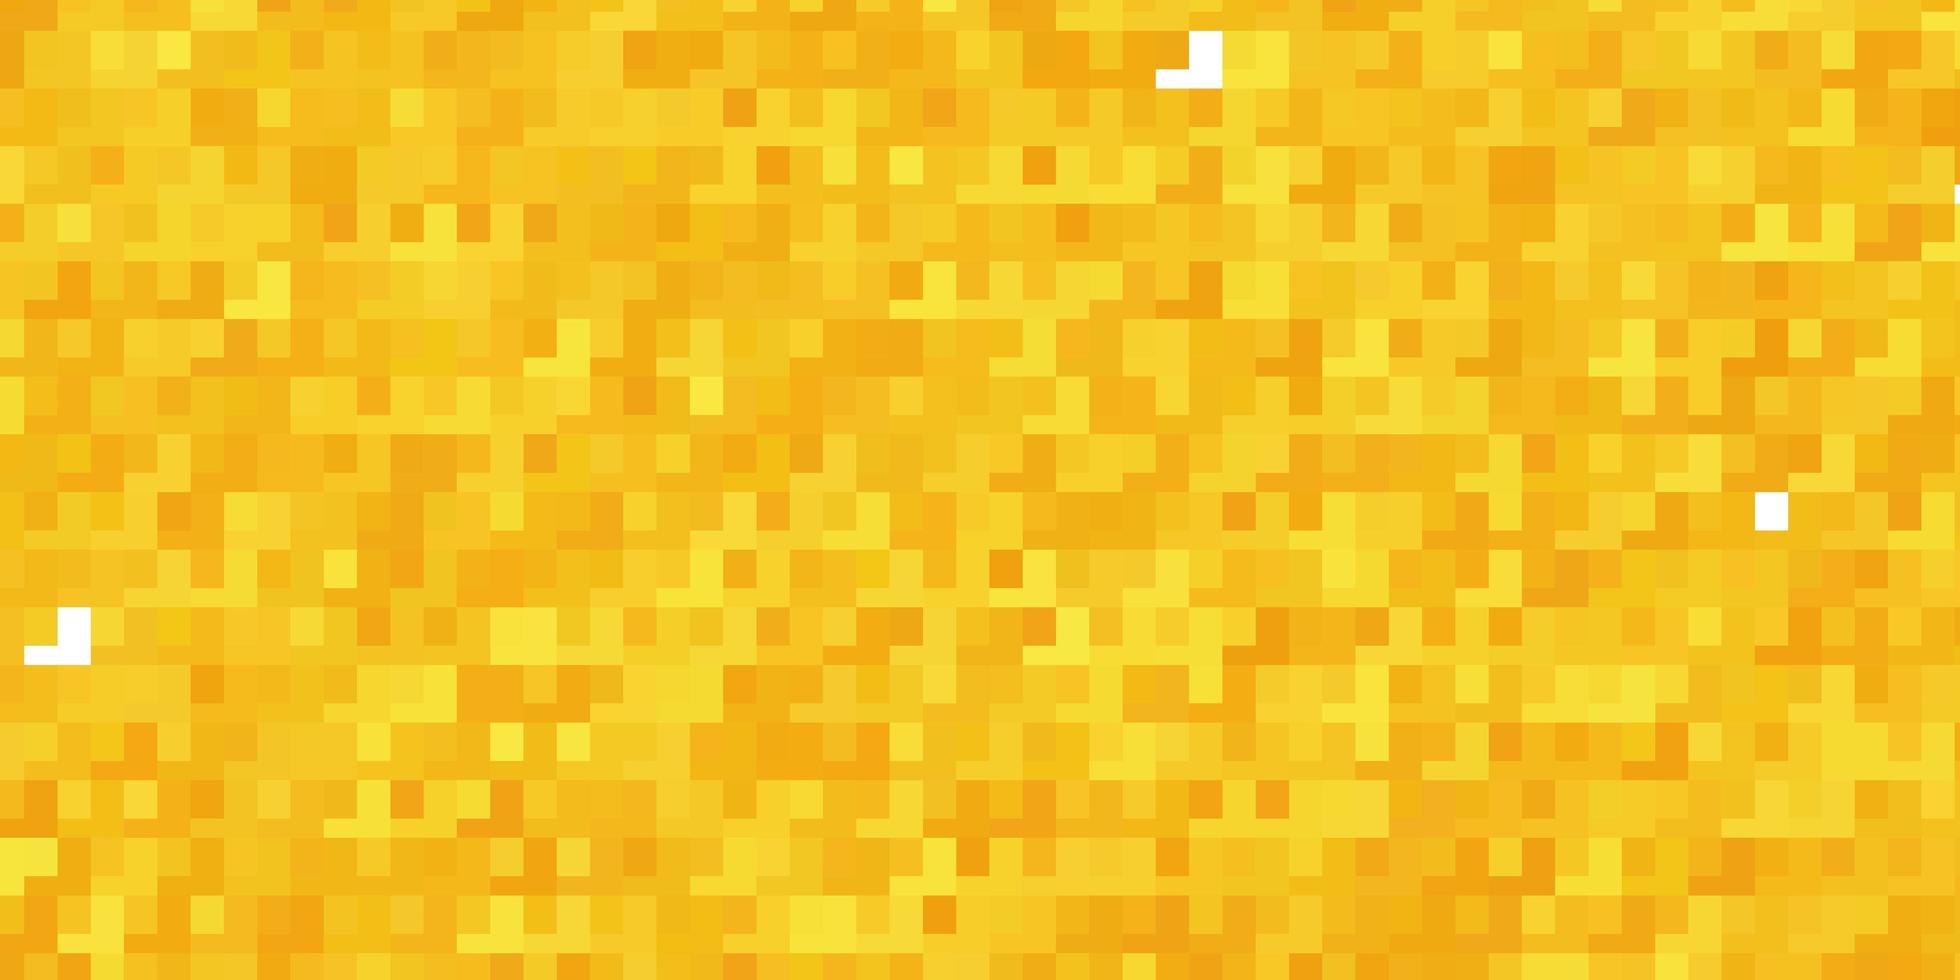 sfondo vettoriale giallo chiaro in stile poligonale